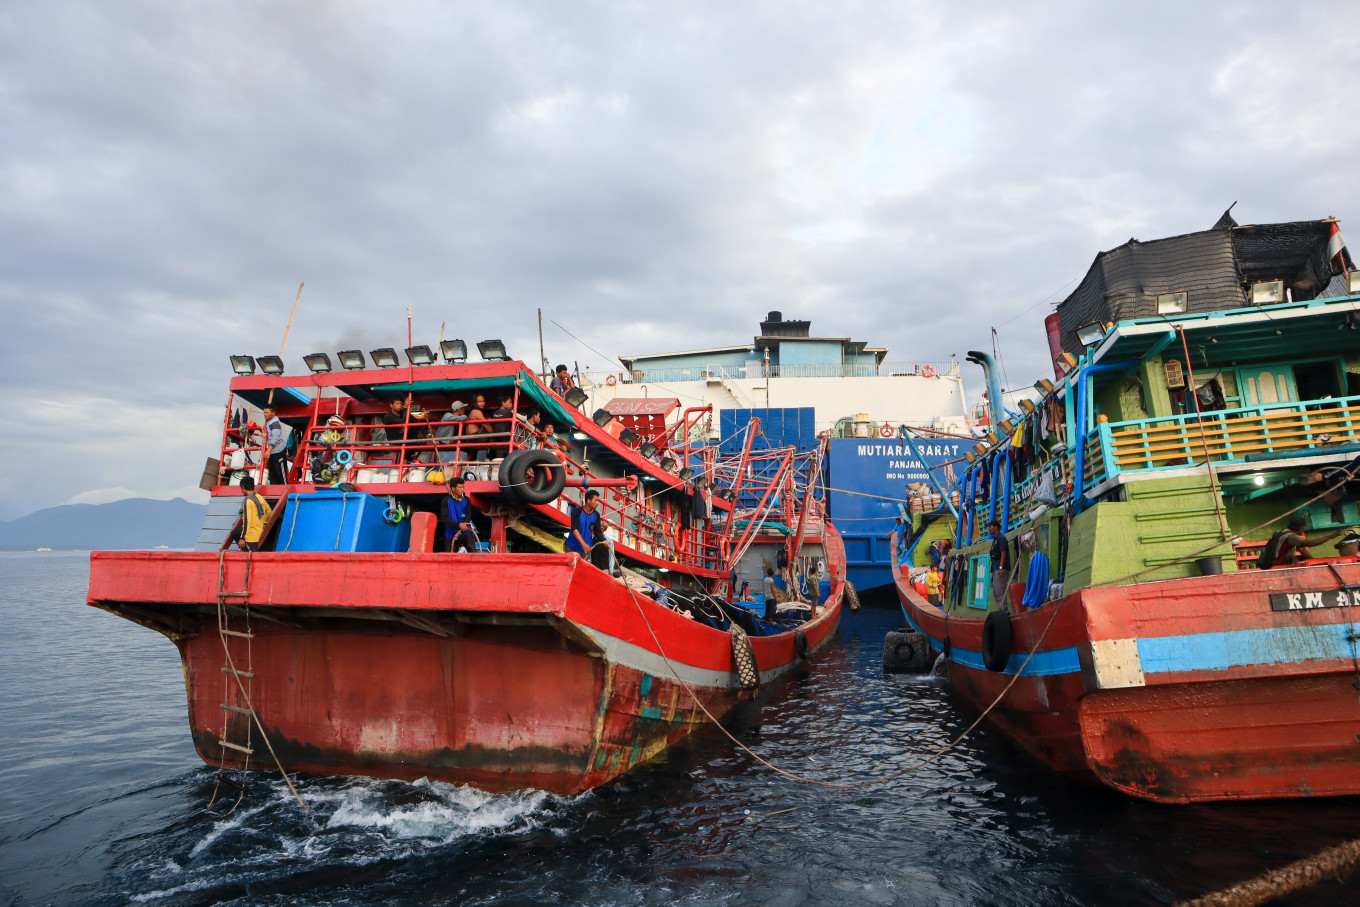 Penangkapan Ikan Berlebihan Terjadi Saat Indonesia Berjuang untuk Memenuhi Target Penangkapan Ikan: Tinjauan – Masyarakat